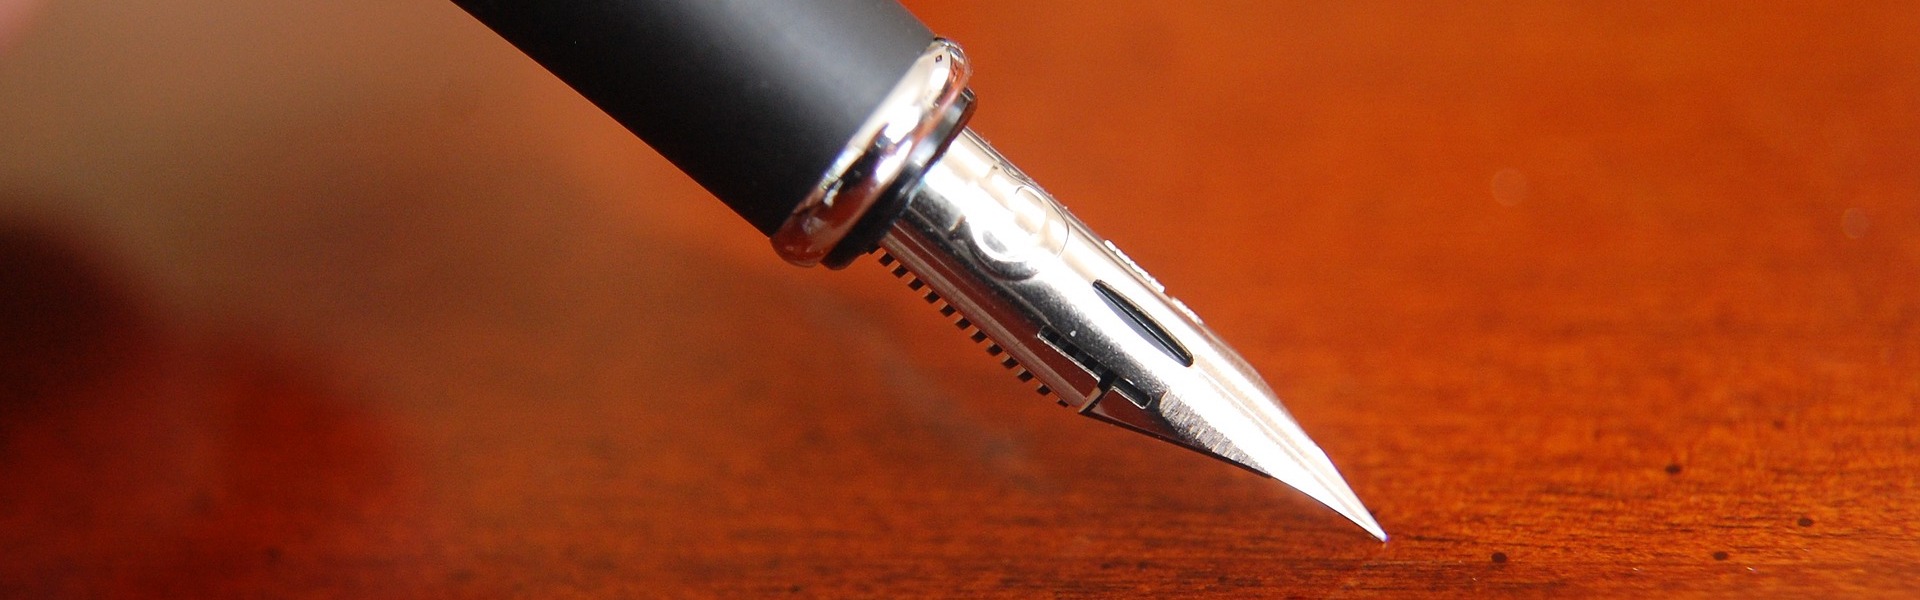 Header image of a fountain pen nib